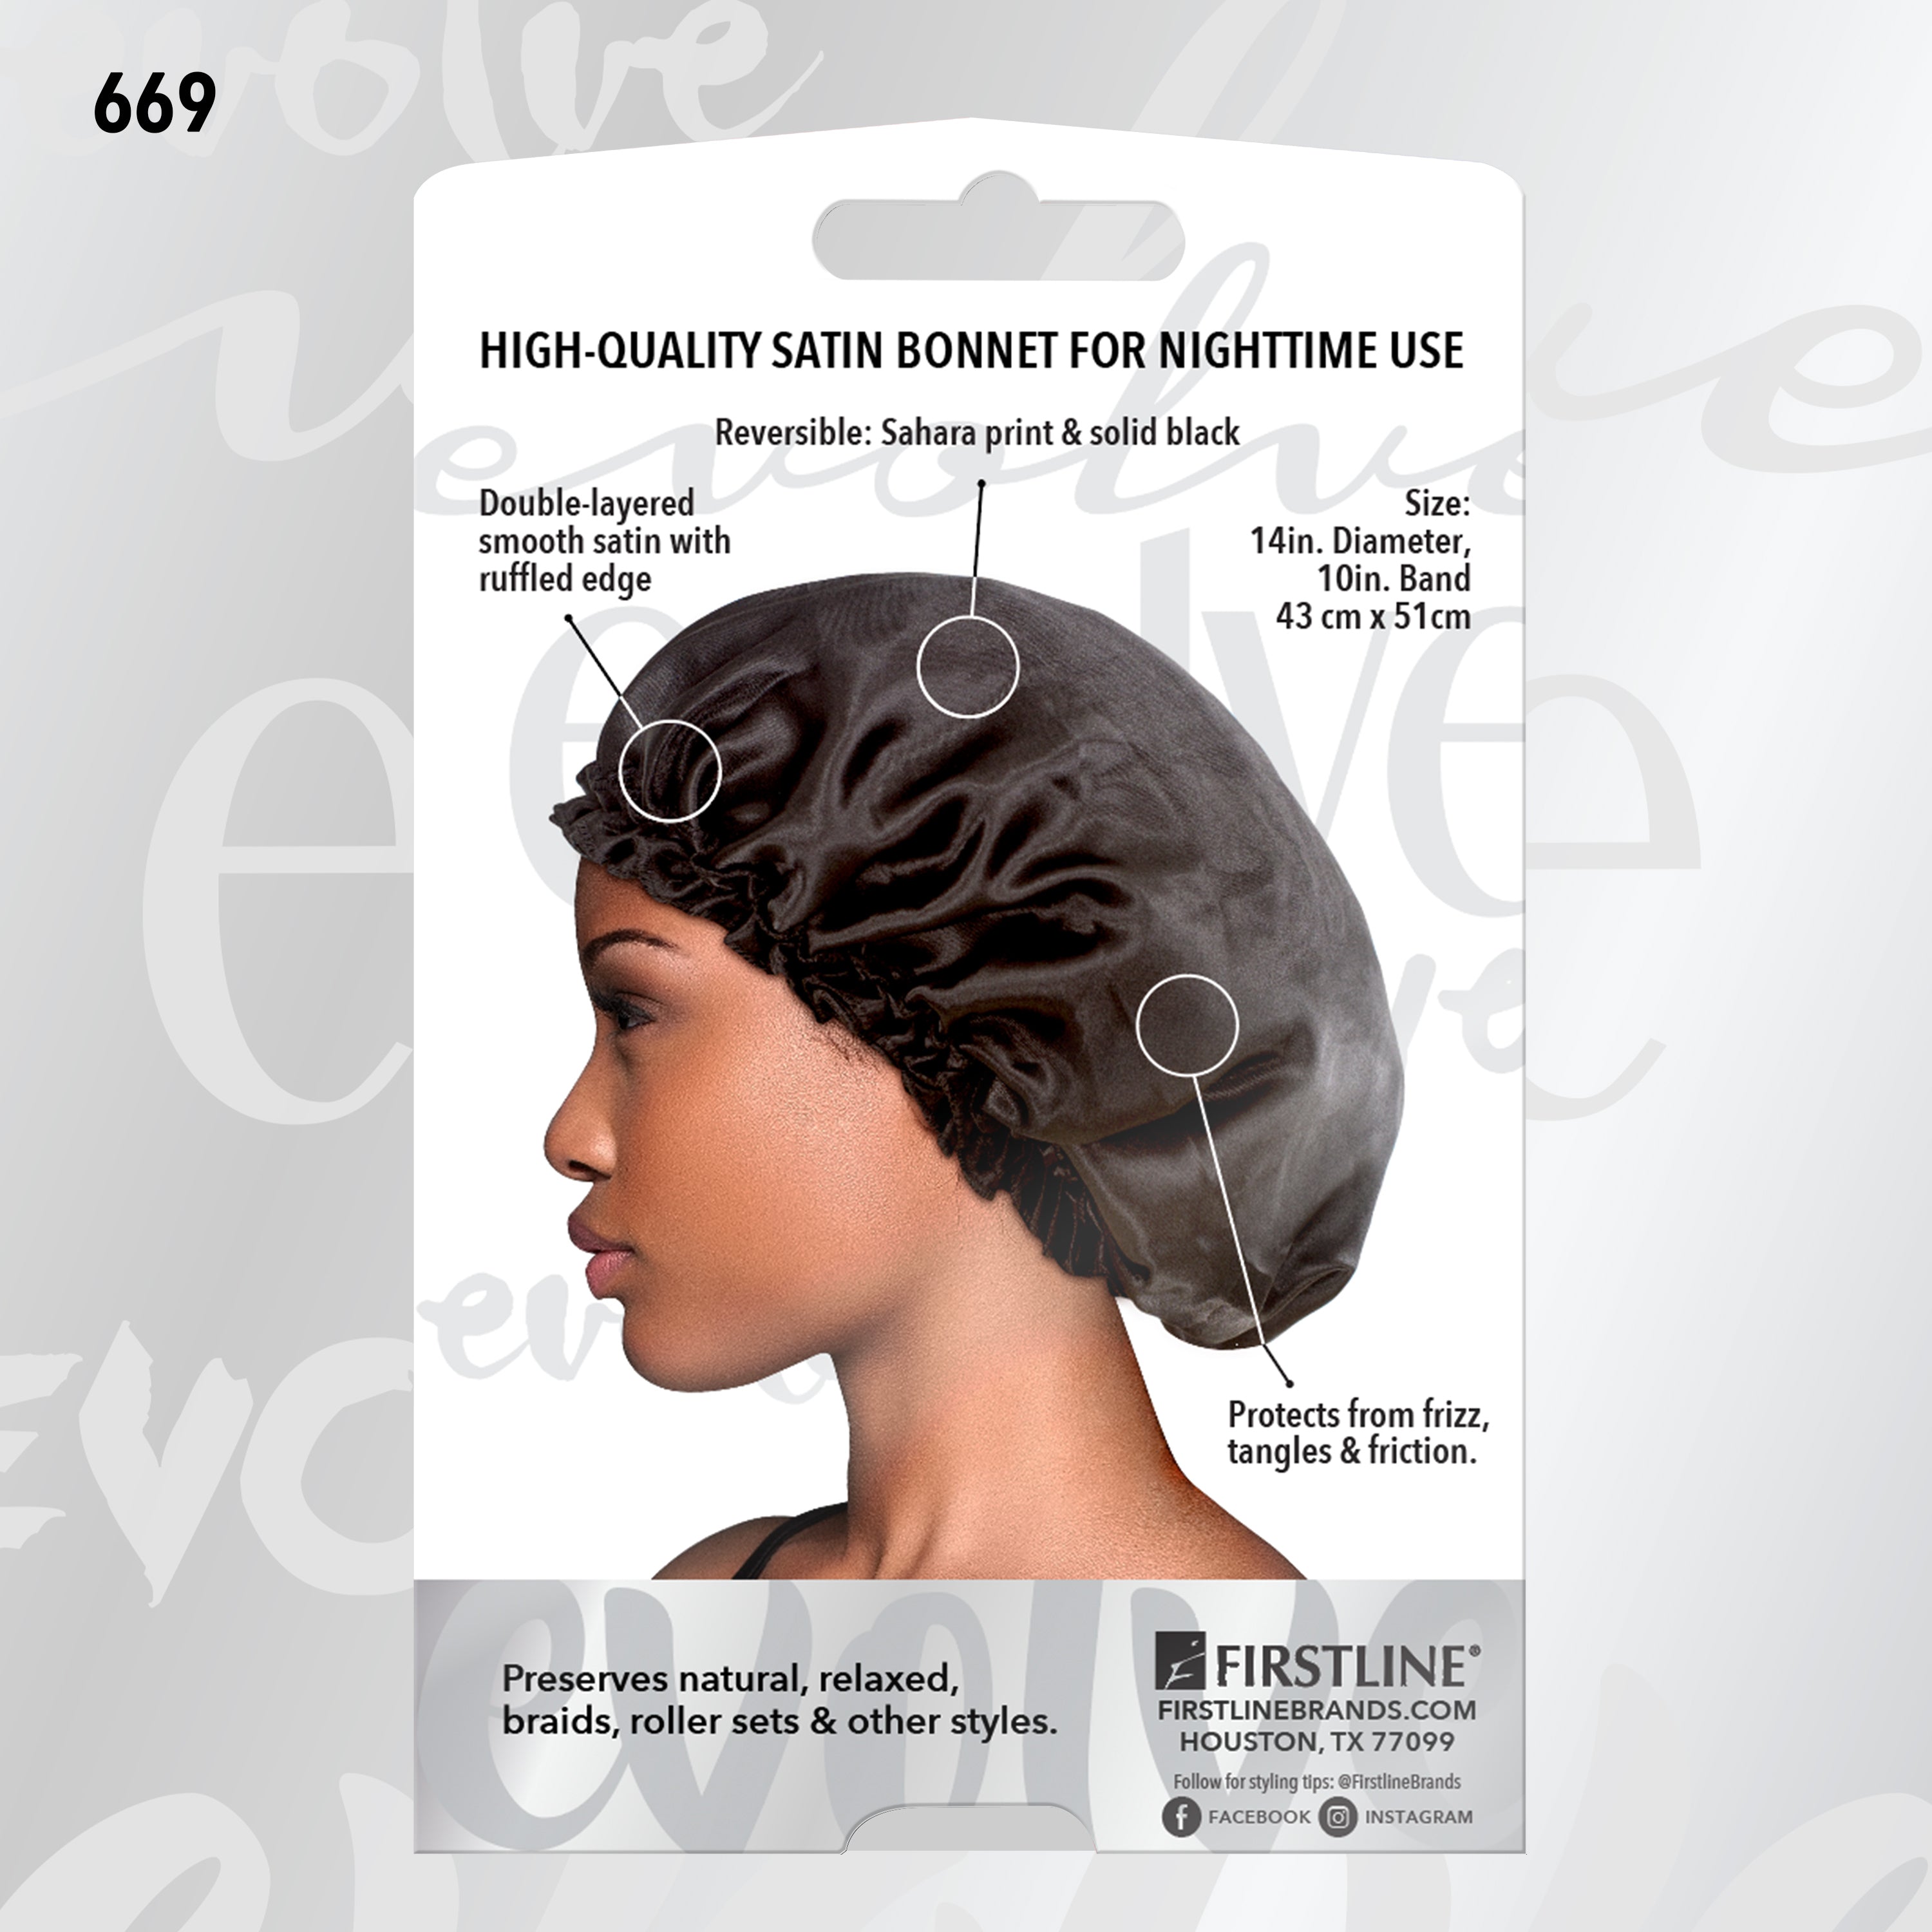 Evolve® Satin Firstline Sahara Bonnets, – Reversible Brands 669